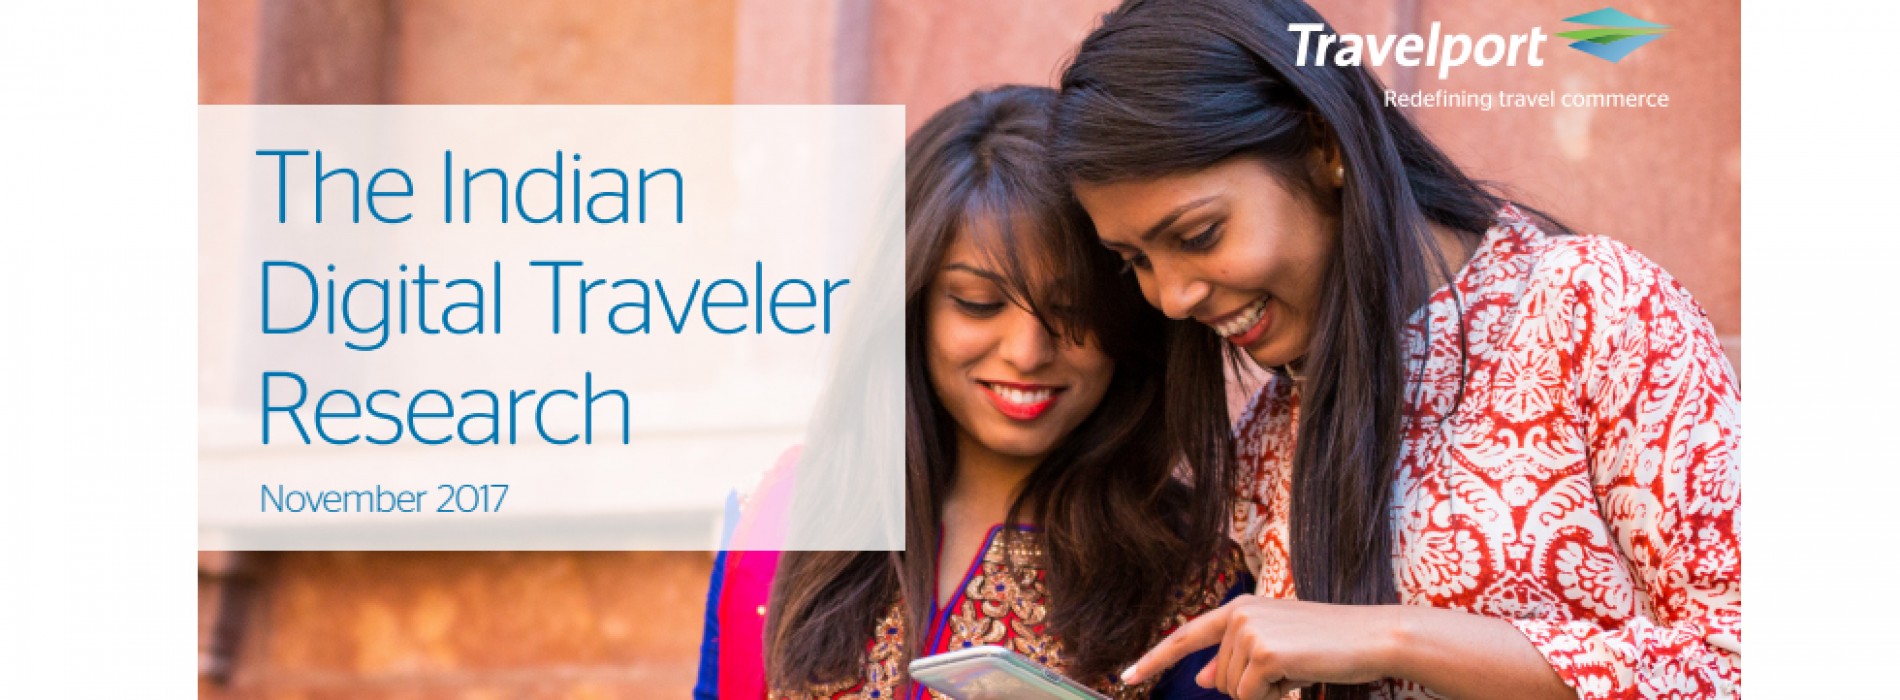 Travelport global survey puts India top of digital traveler rankings